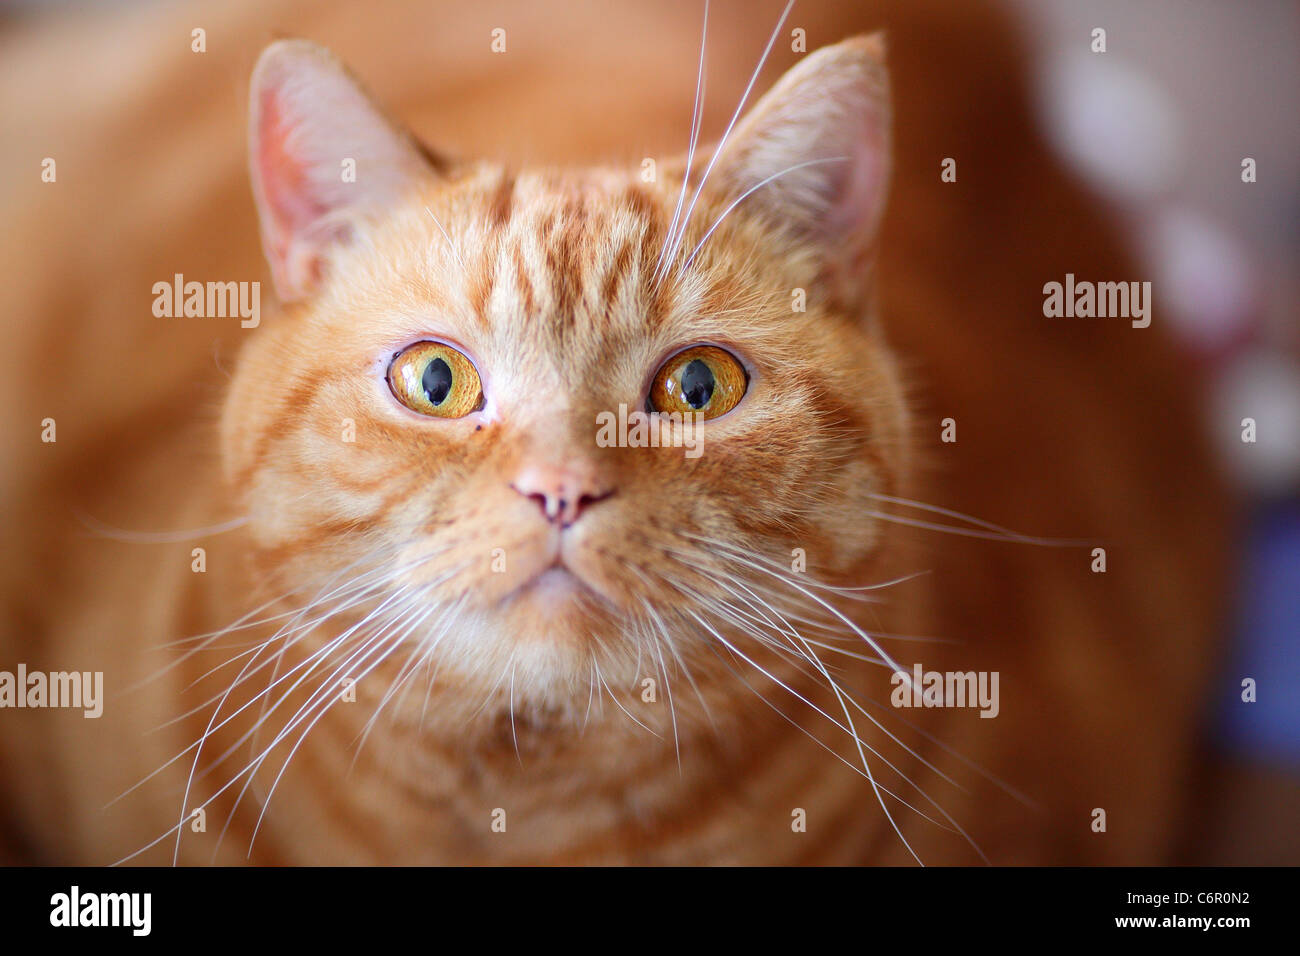 Ginger british shorthair cat  gazing gaze stare Stock Photo